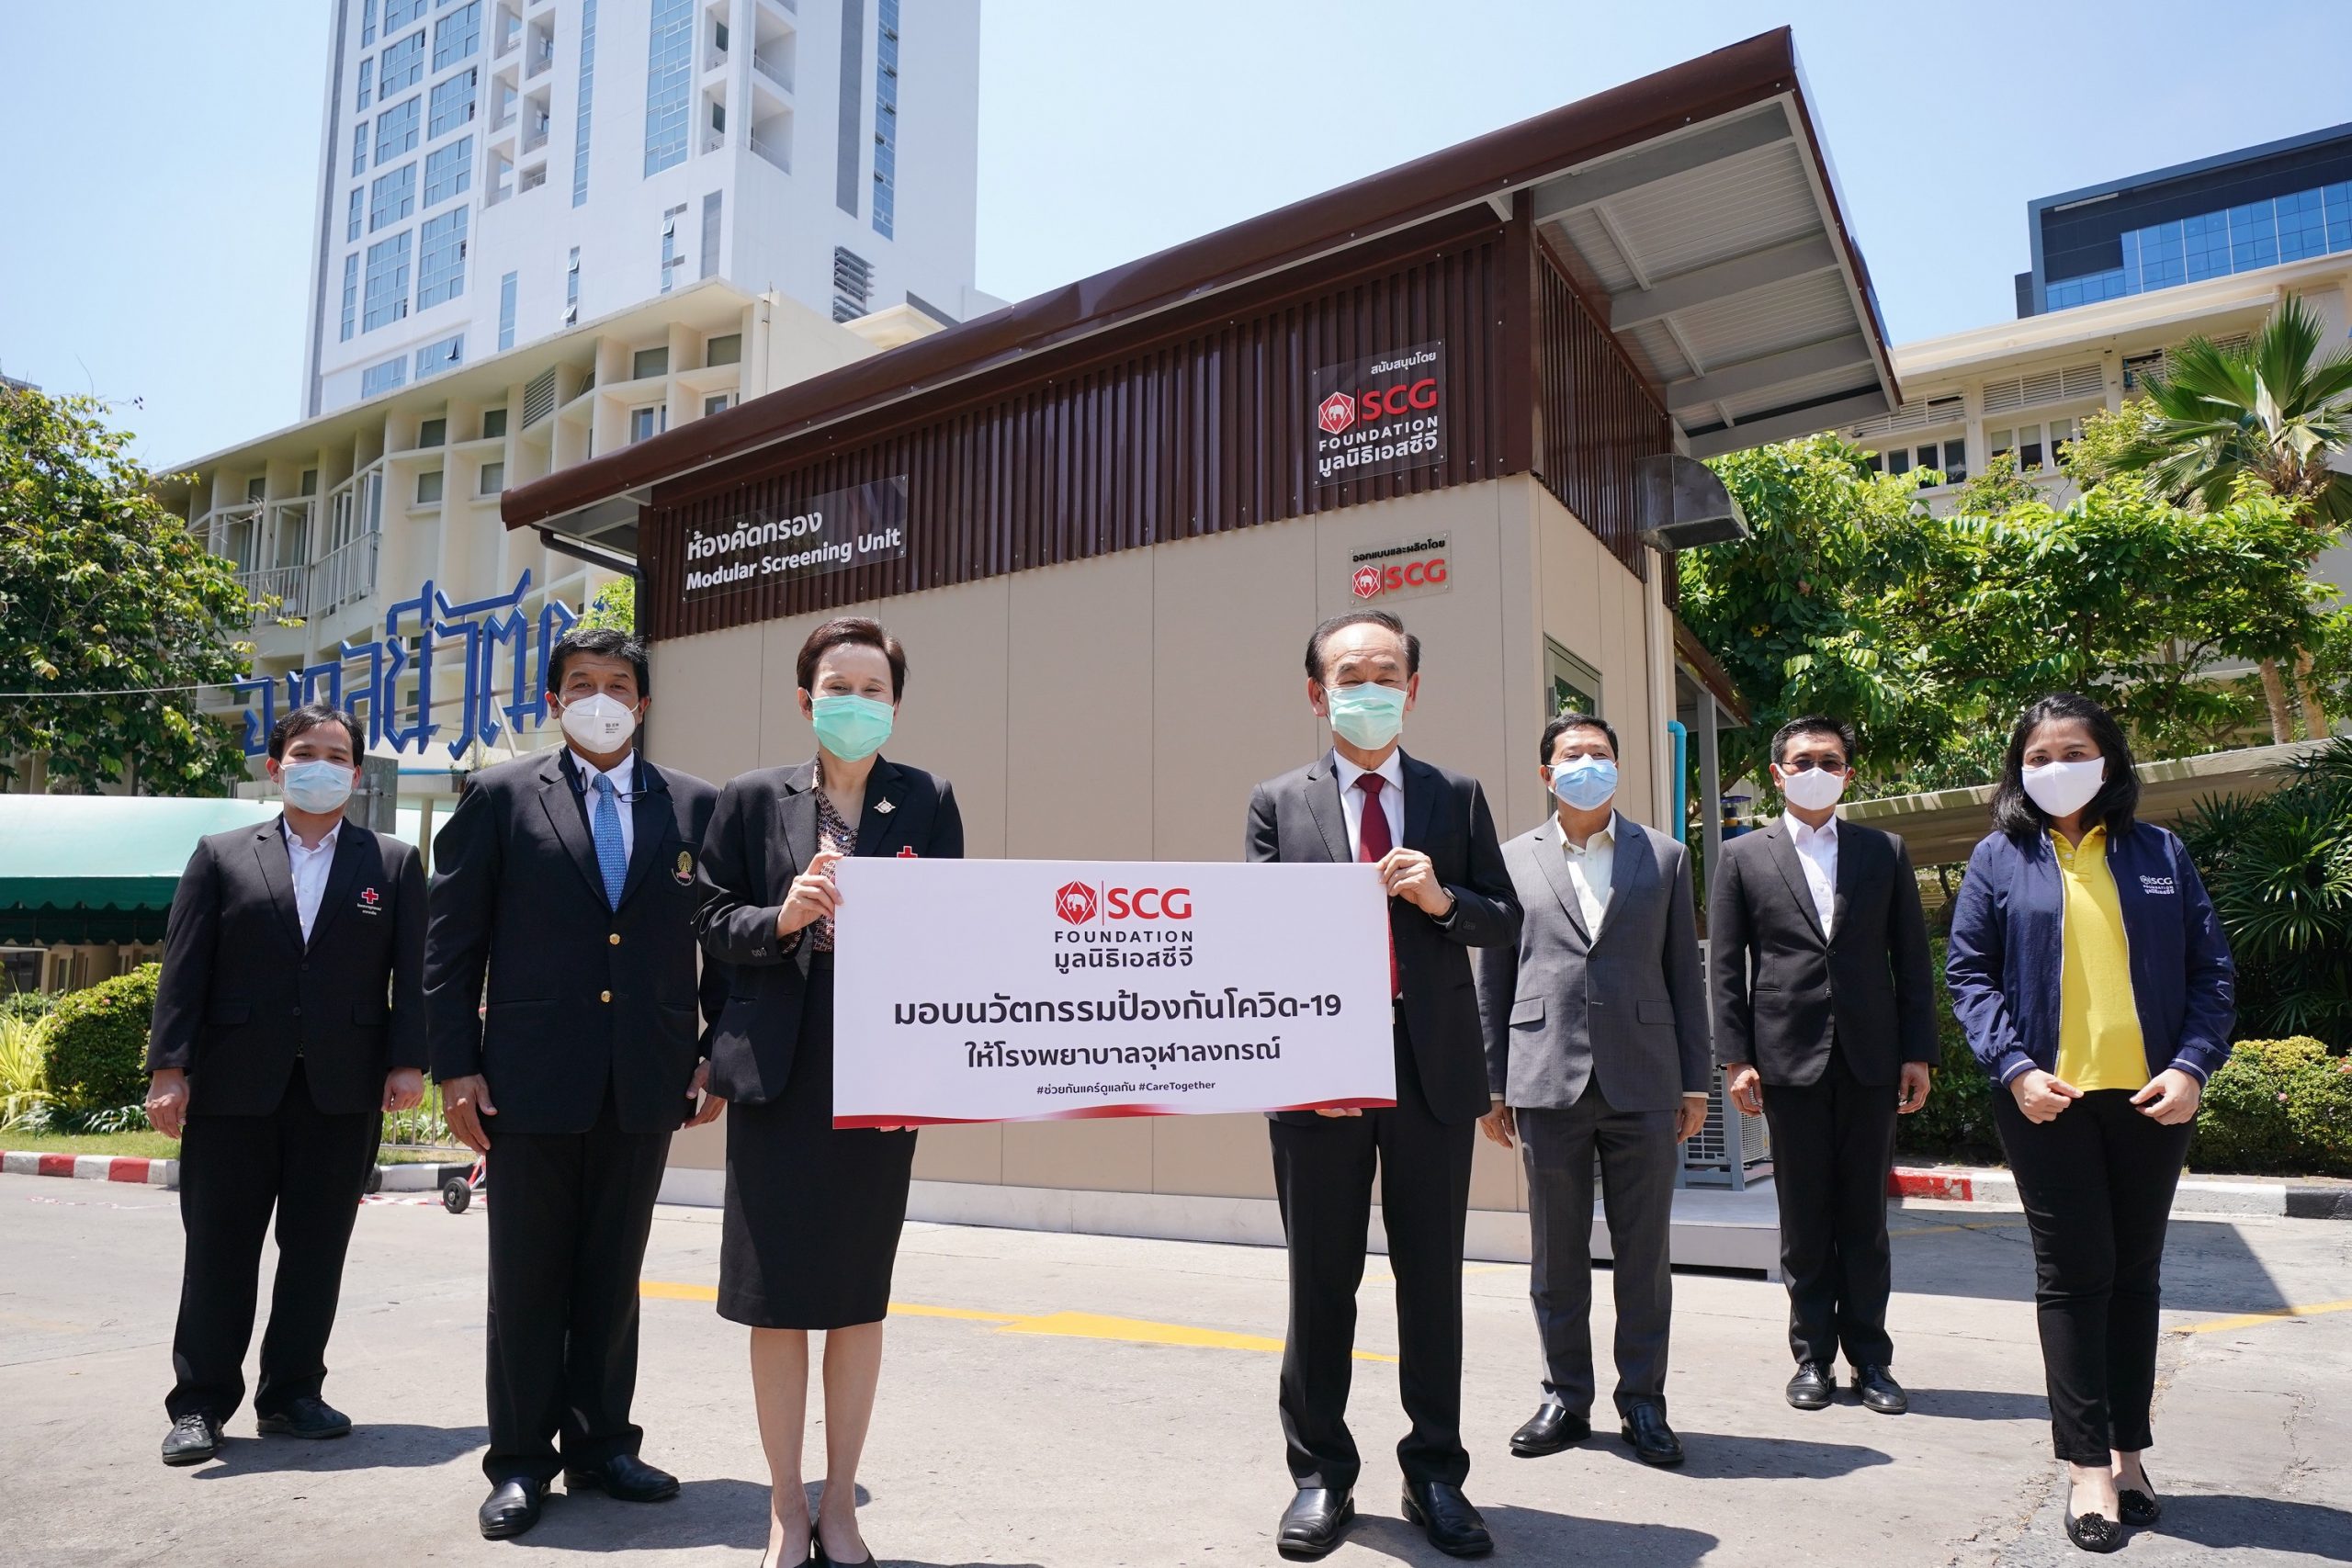 มูลนิธิเอสซีจี ส่งมอบนวัตกรรมห้องคัดกรอง (Modular Screening Unit) แห่งที่ 4 แก่โรงพยาบาลจุฬาลงกรณ์ สภากาชาดไทย